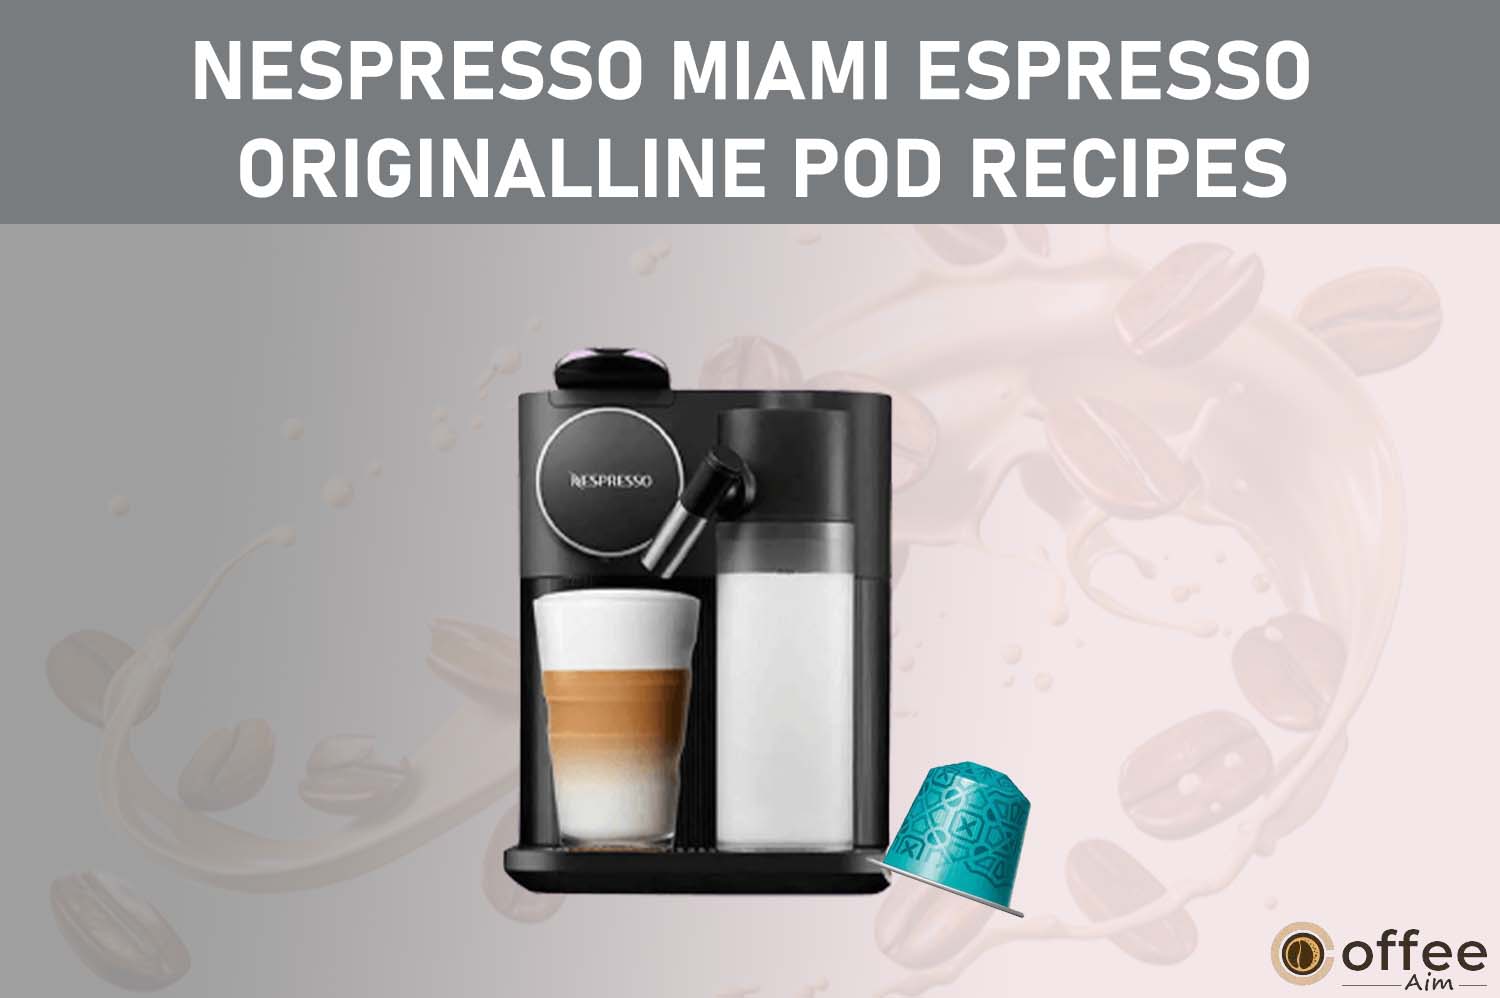 Fetaured image for the article "Nespresso Miami Espresso OriginalLine Pod Recipes"